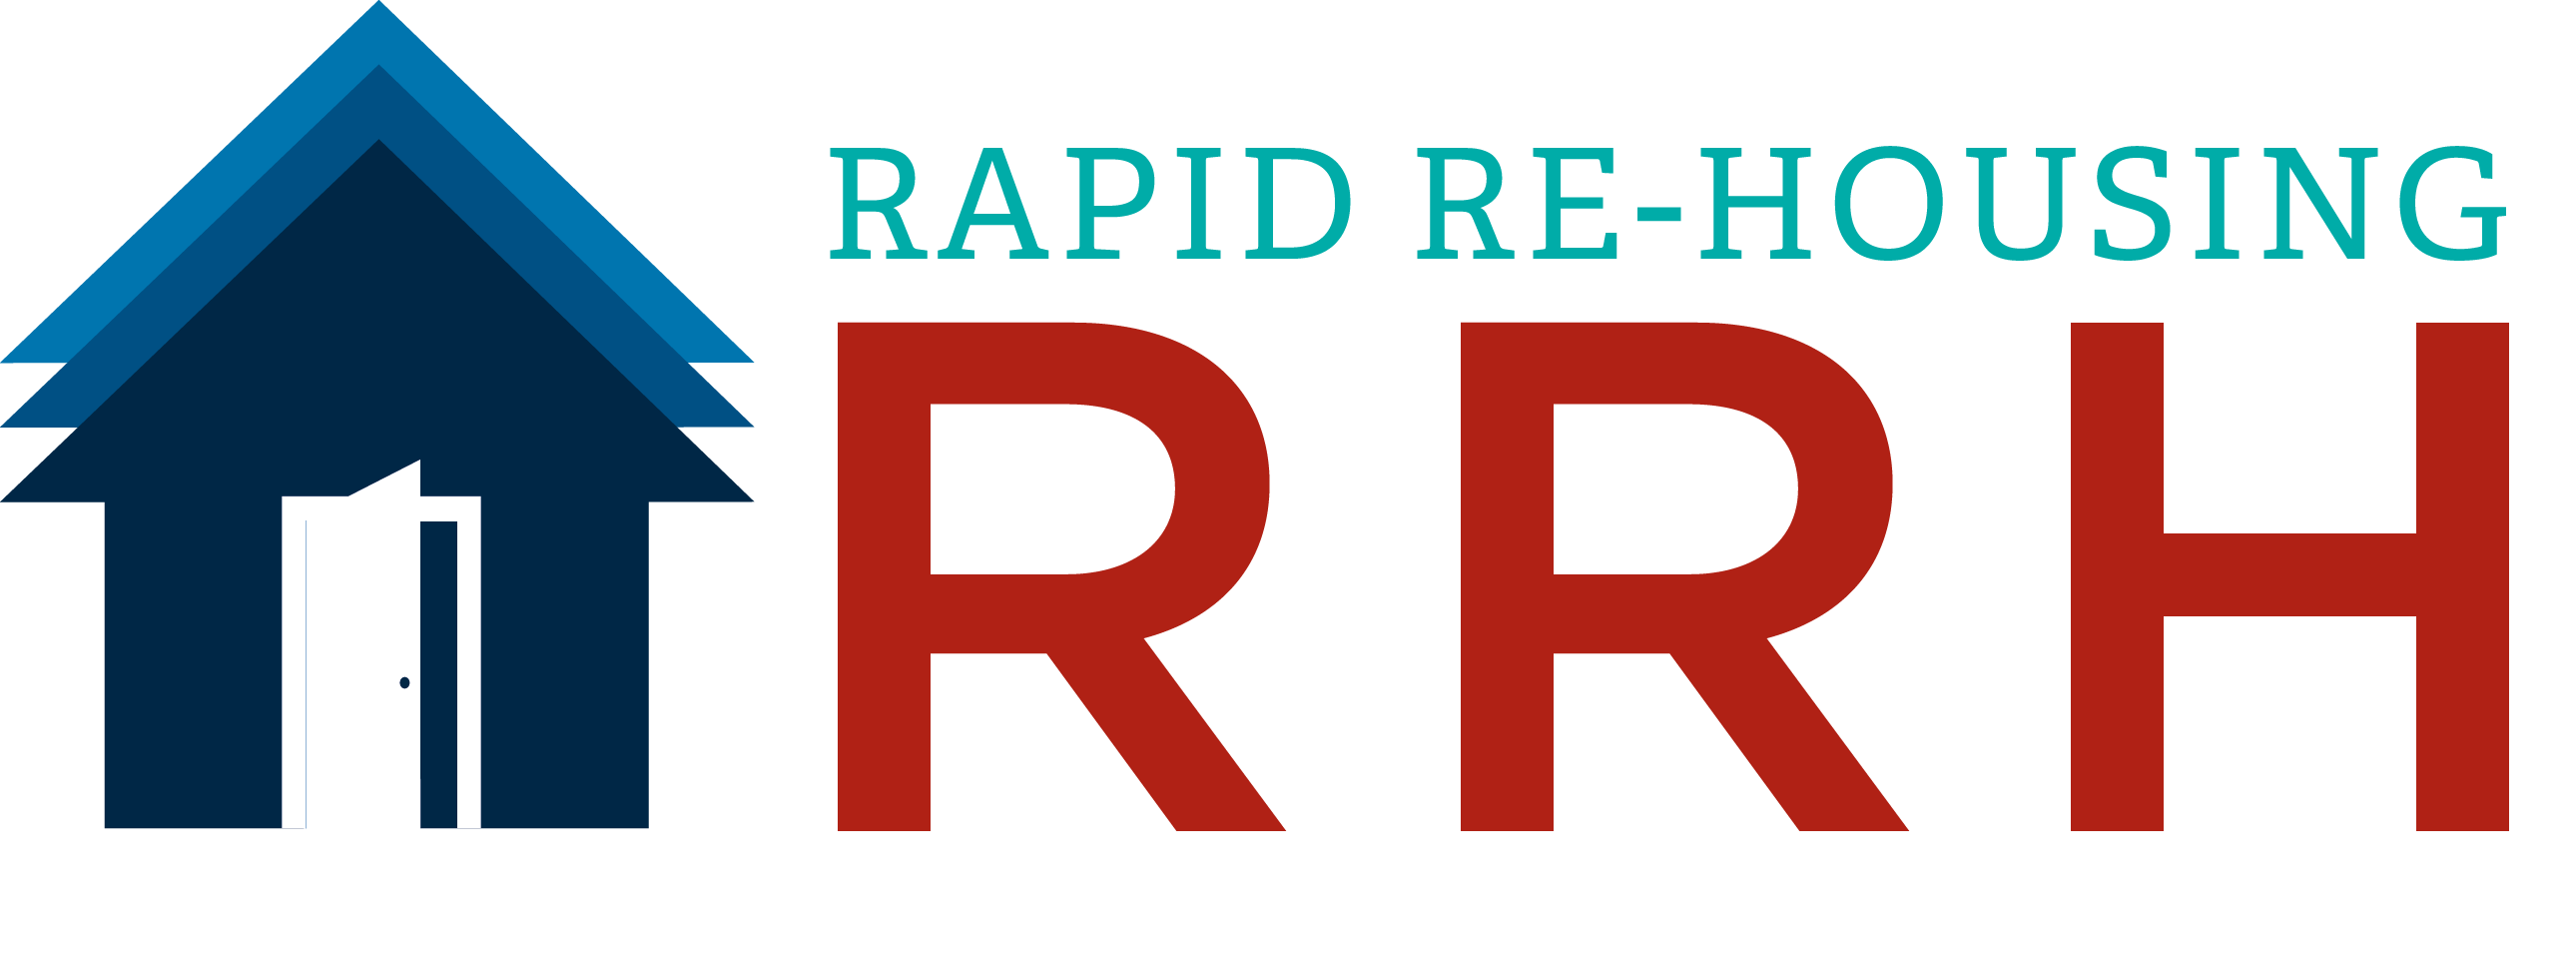 Rapid Re-Housing Logo.